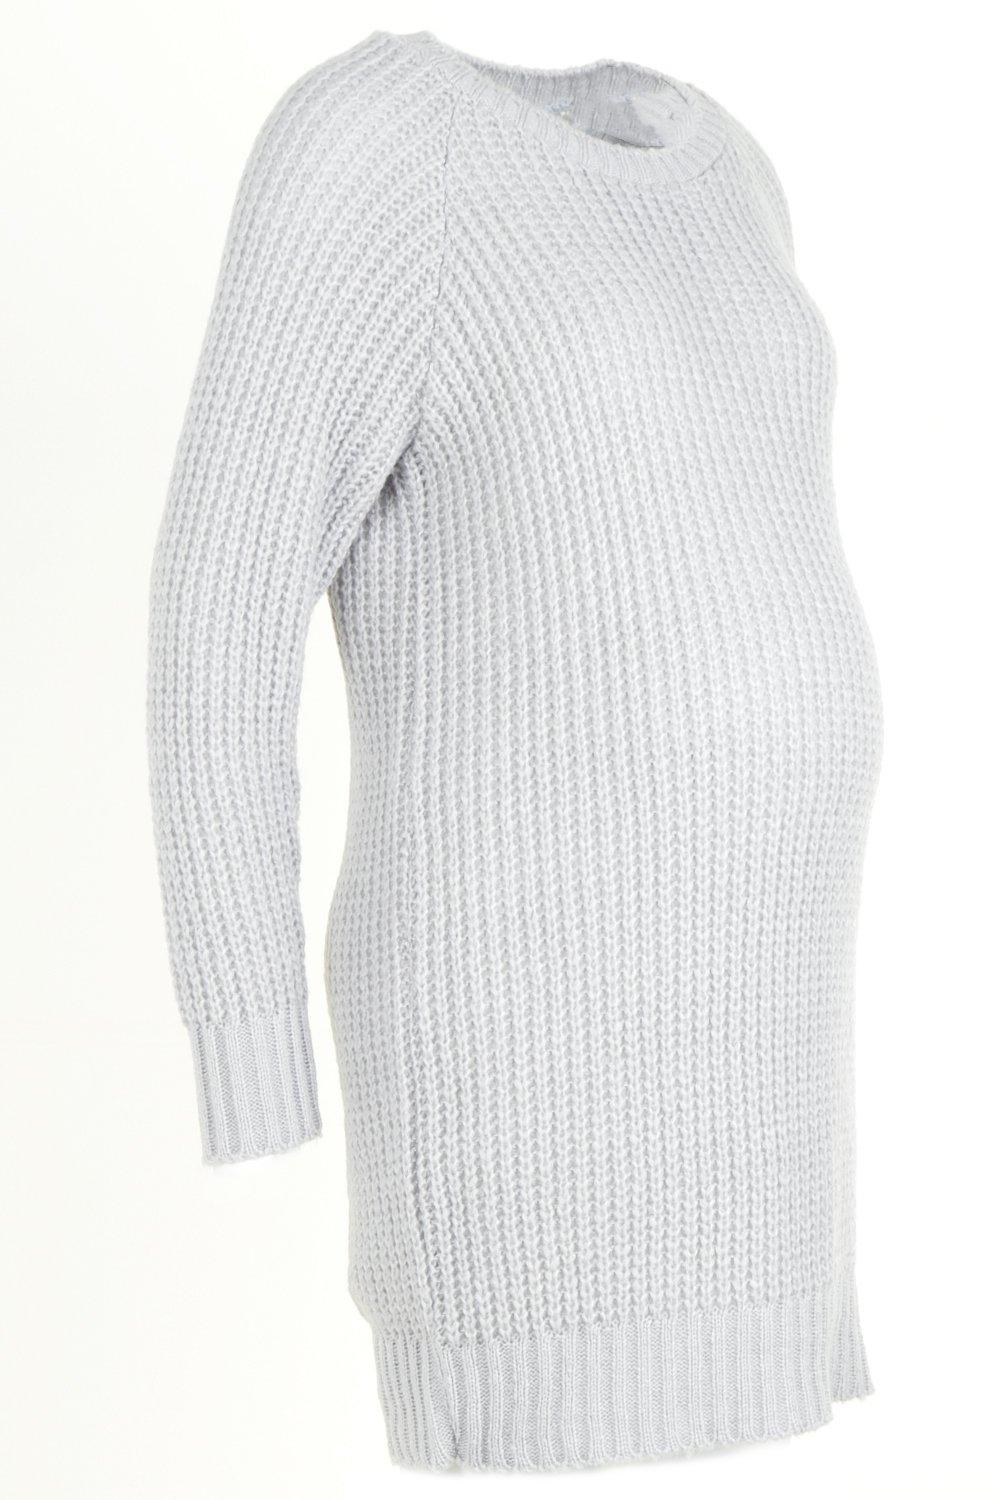 szara sweterkowa ciążowa sukienka długi rękaw